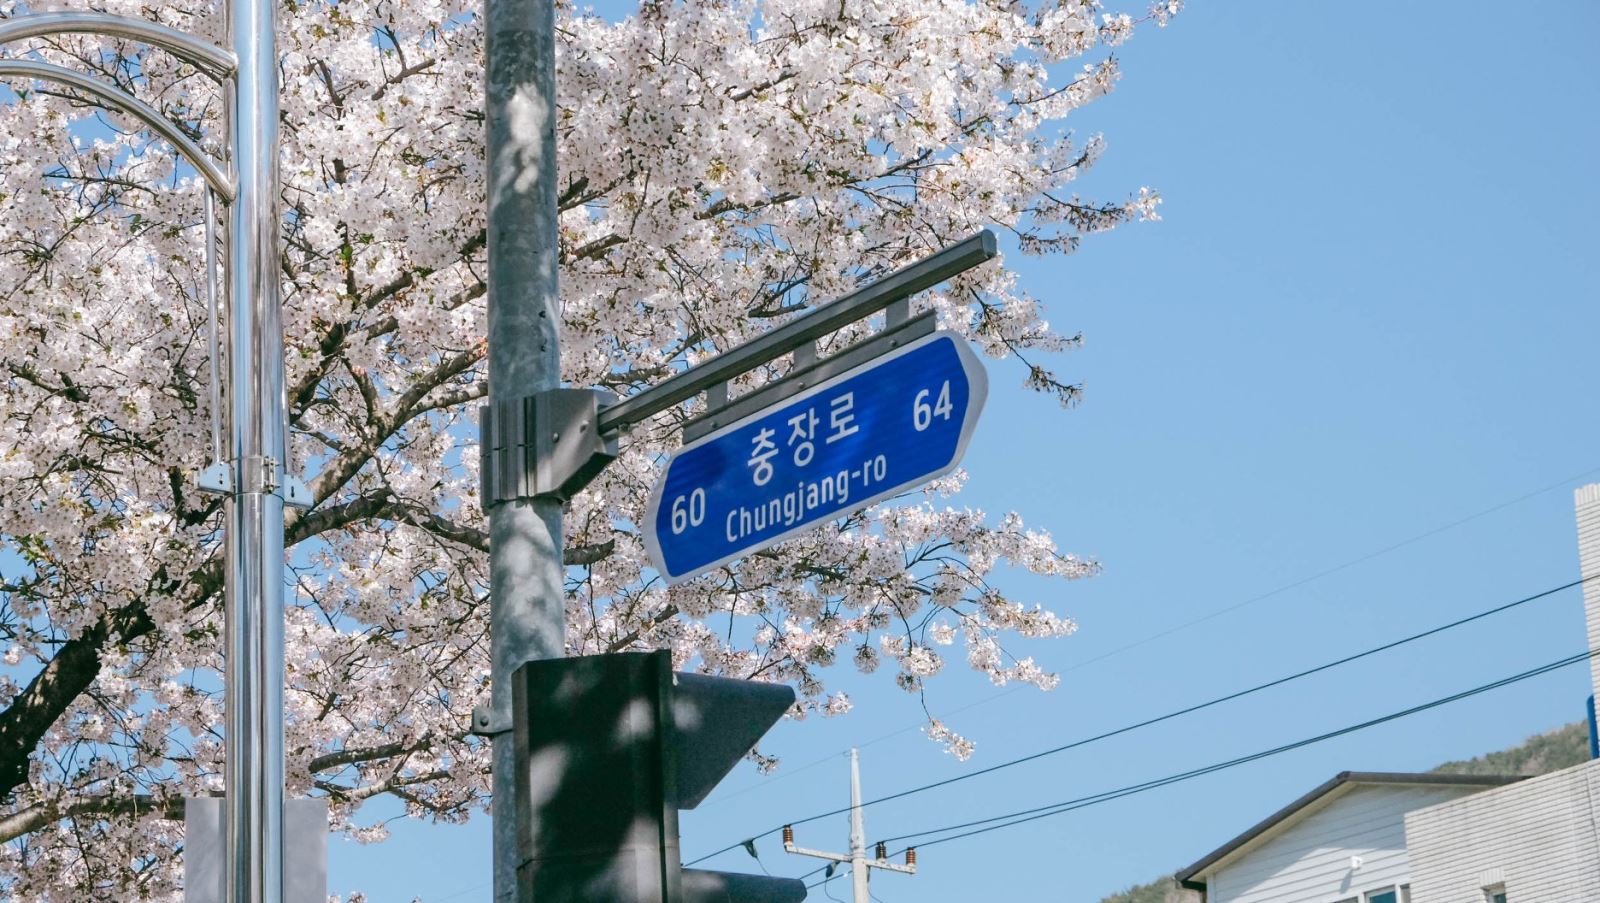 Khu vực vòng xoay Jungwon chính là nơi diễn ra lễ hội hoa anh đào Jinhae